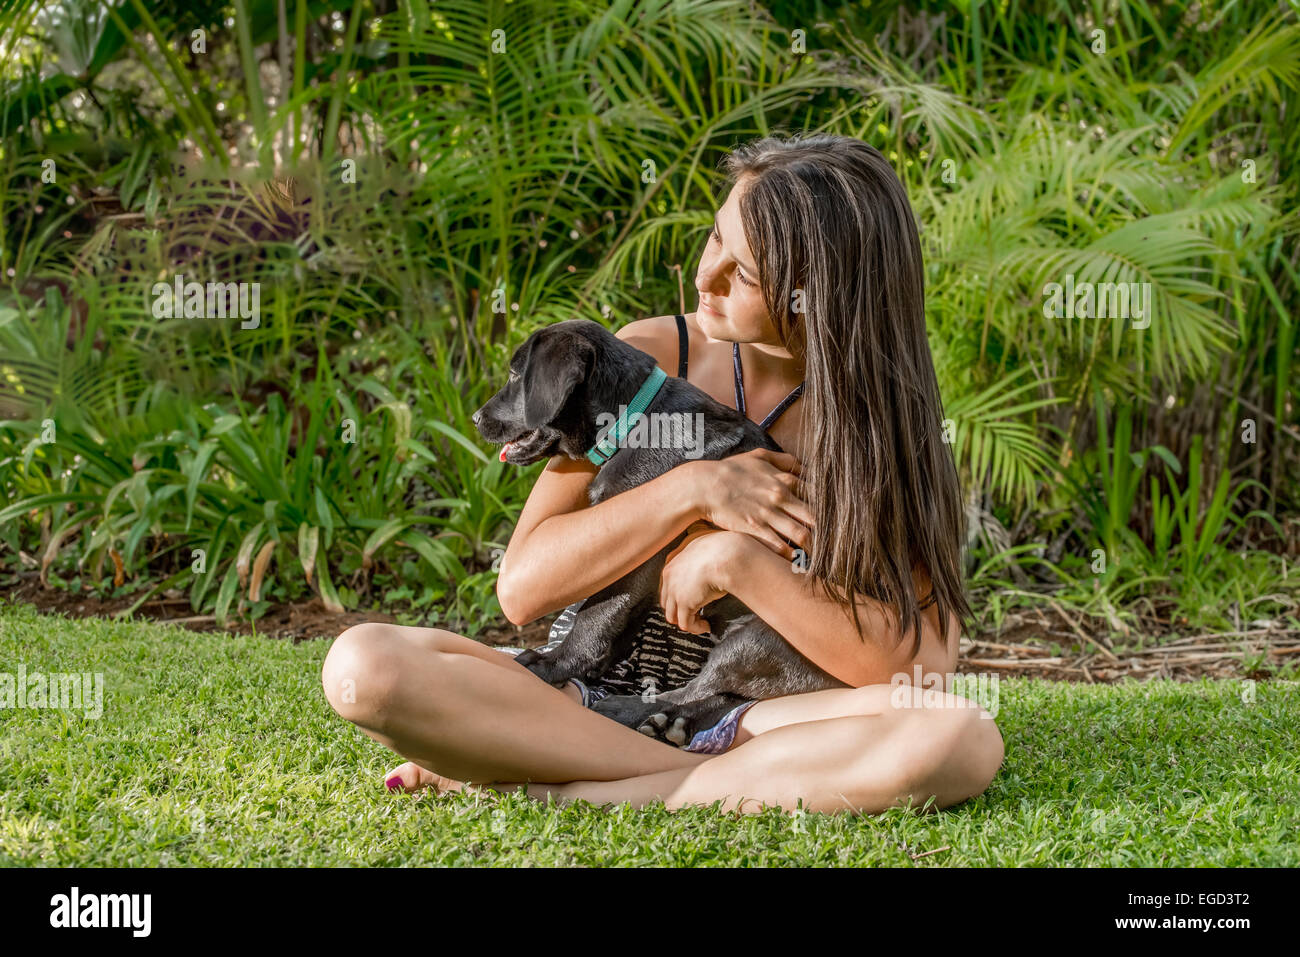 Jeune adolescente assis sur la pelouse du jardin de sa maison tout en tenant un chiot Labrador noir dans ses bras et ses mains. Banque D'Images